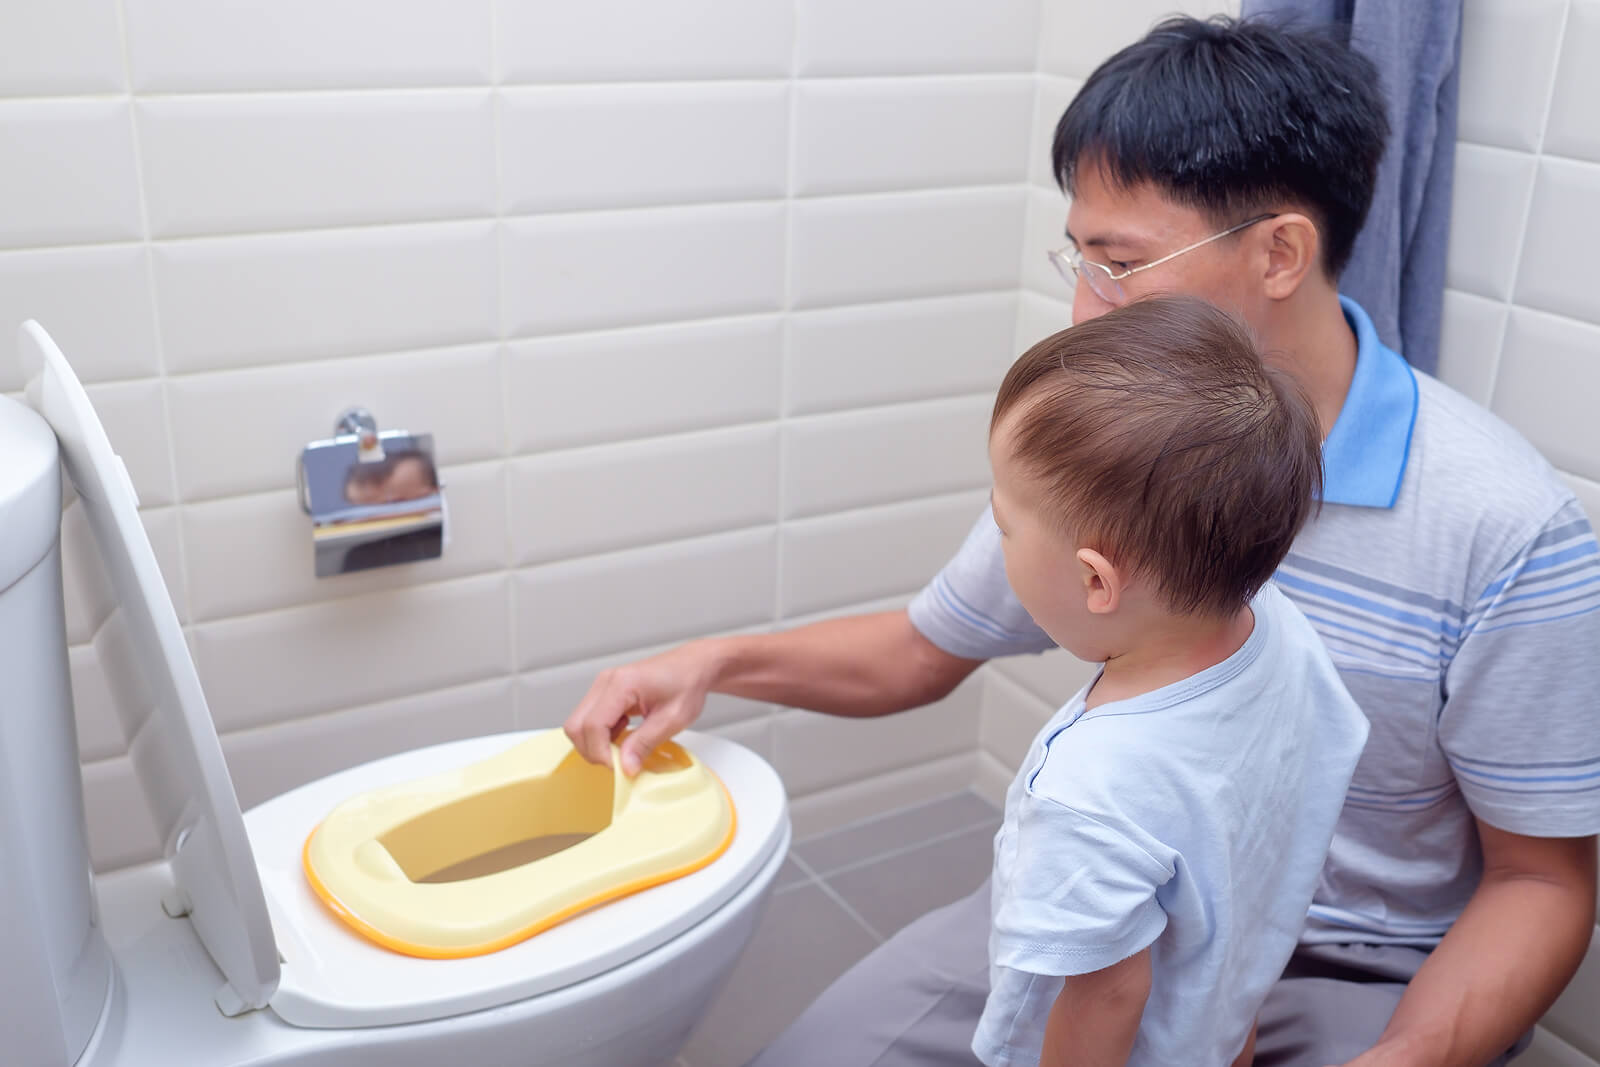 Padre enseñando a su hijo a usar el baño, porque un padre no es una niñera.